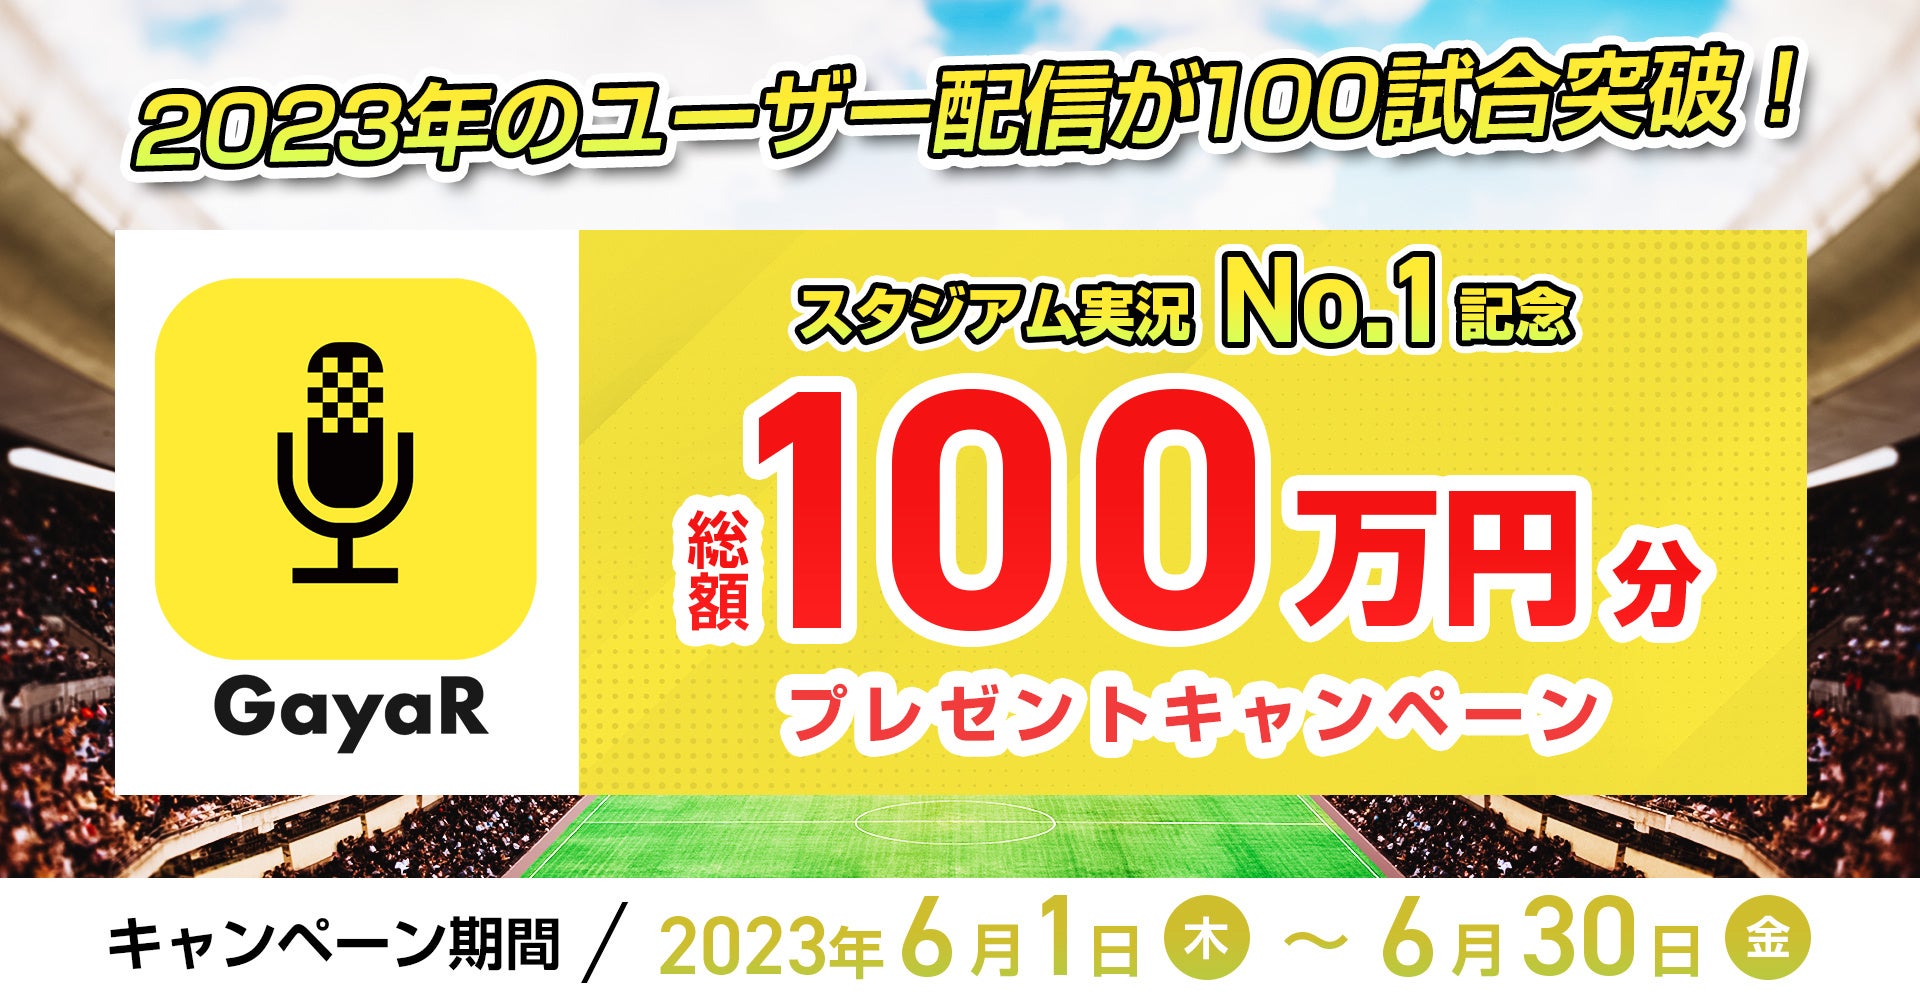 実況アプリ『GayaR』が100万円プレゼントキャンペーンを実施開始